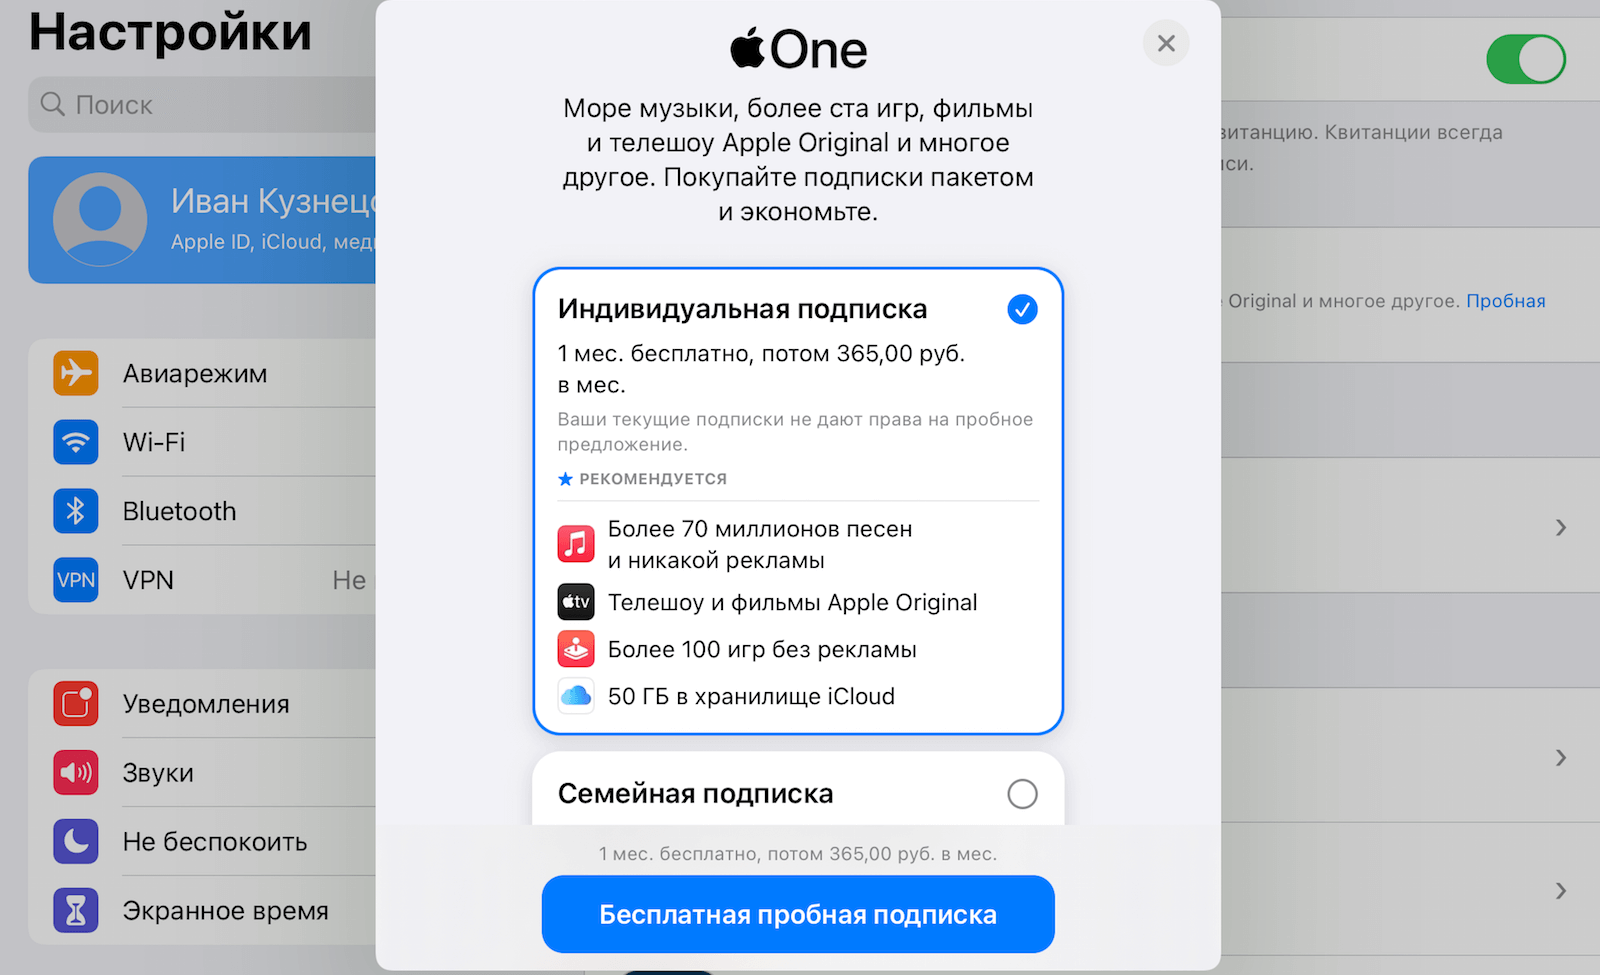 Купить iPhone по подписке в России можно уже давно, но не все понимают, в чём тут подвох Разбираемся, как устроена эта услуга, чем она отличается от рассрочки и чем лучше воспользоваться, чтобы не переплатить